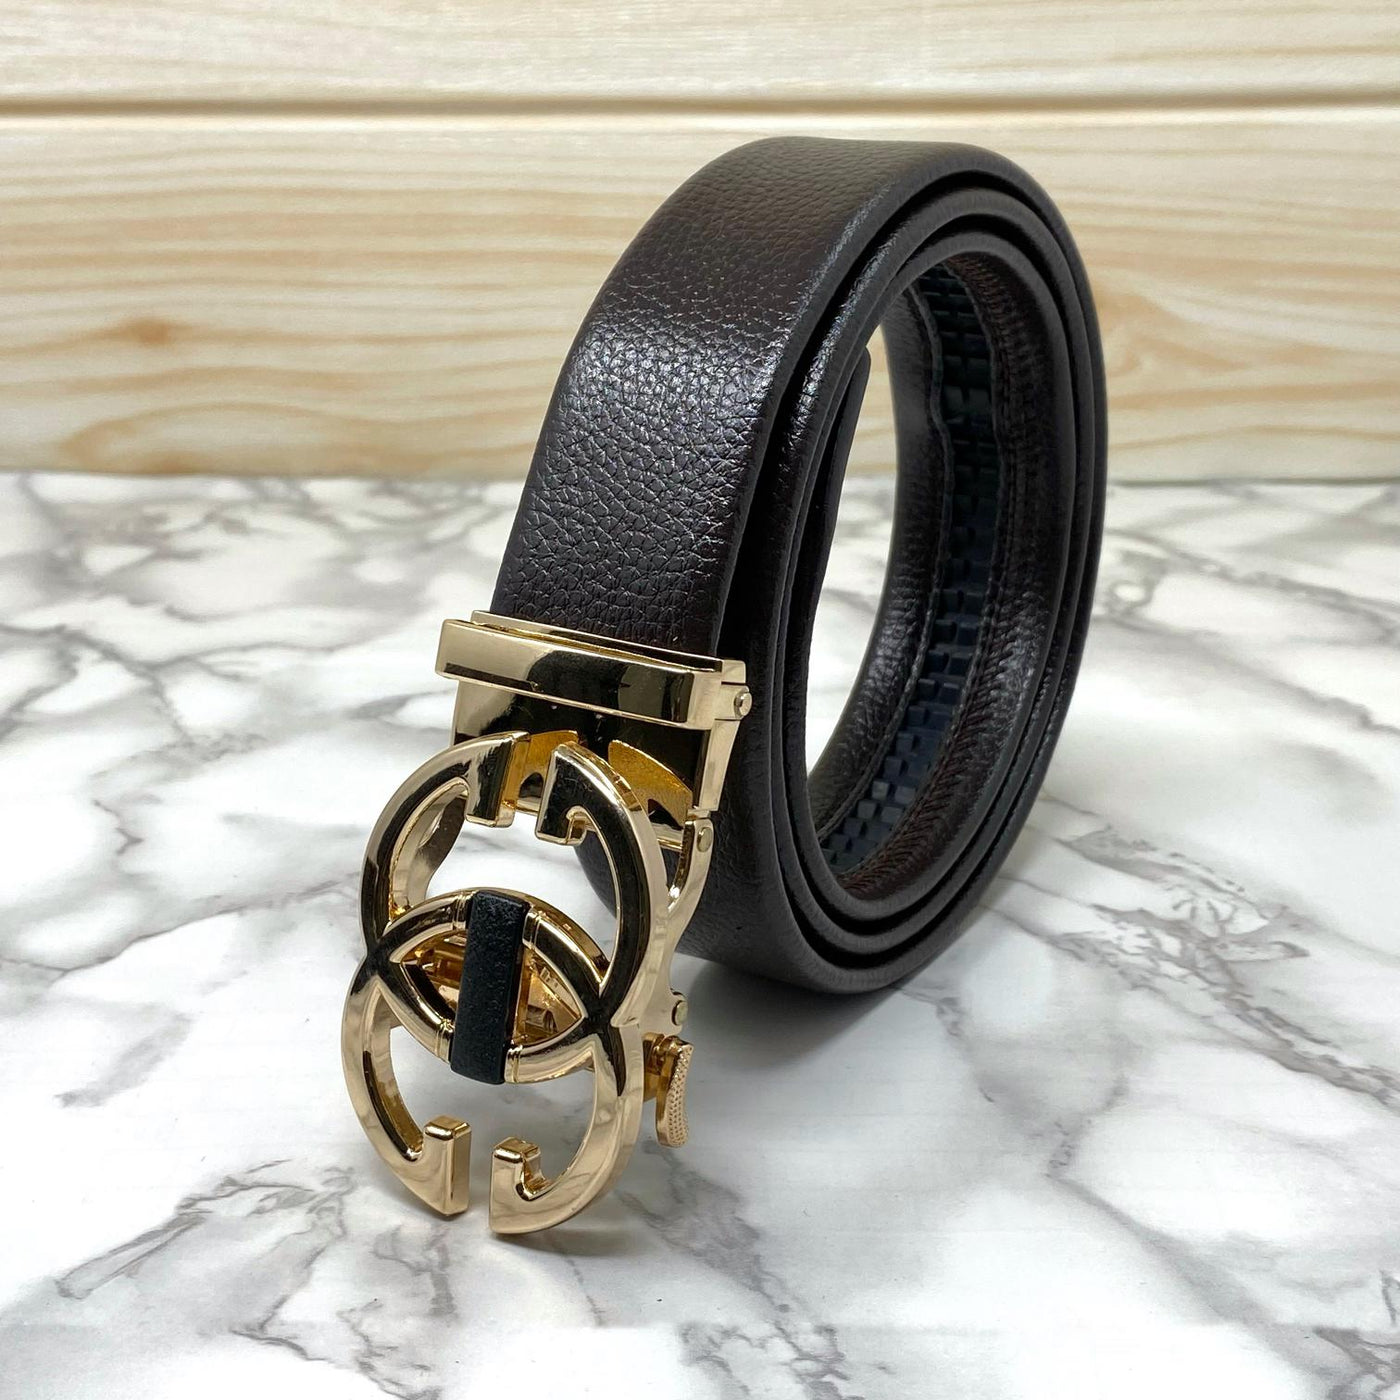 Two Tune Premium Quality Adjustable Belt For Men-UniqueandClassy